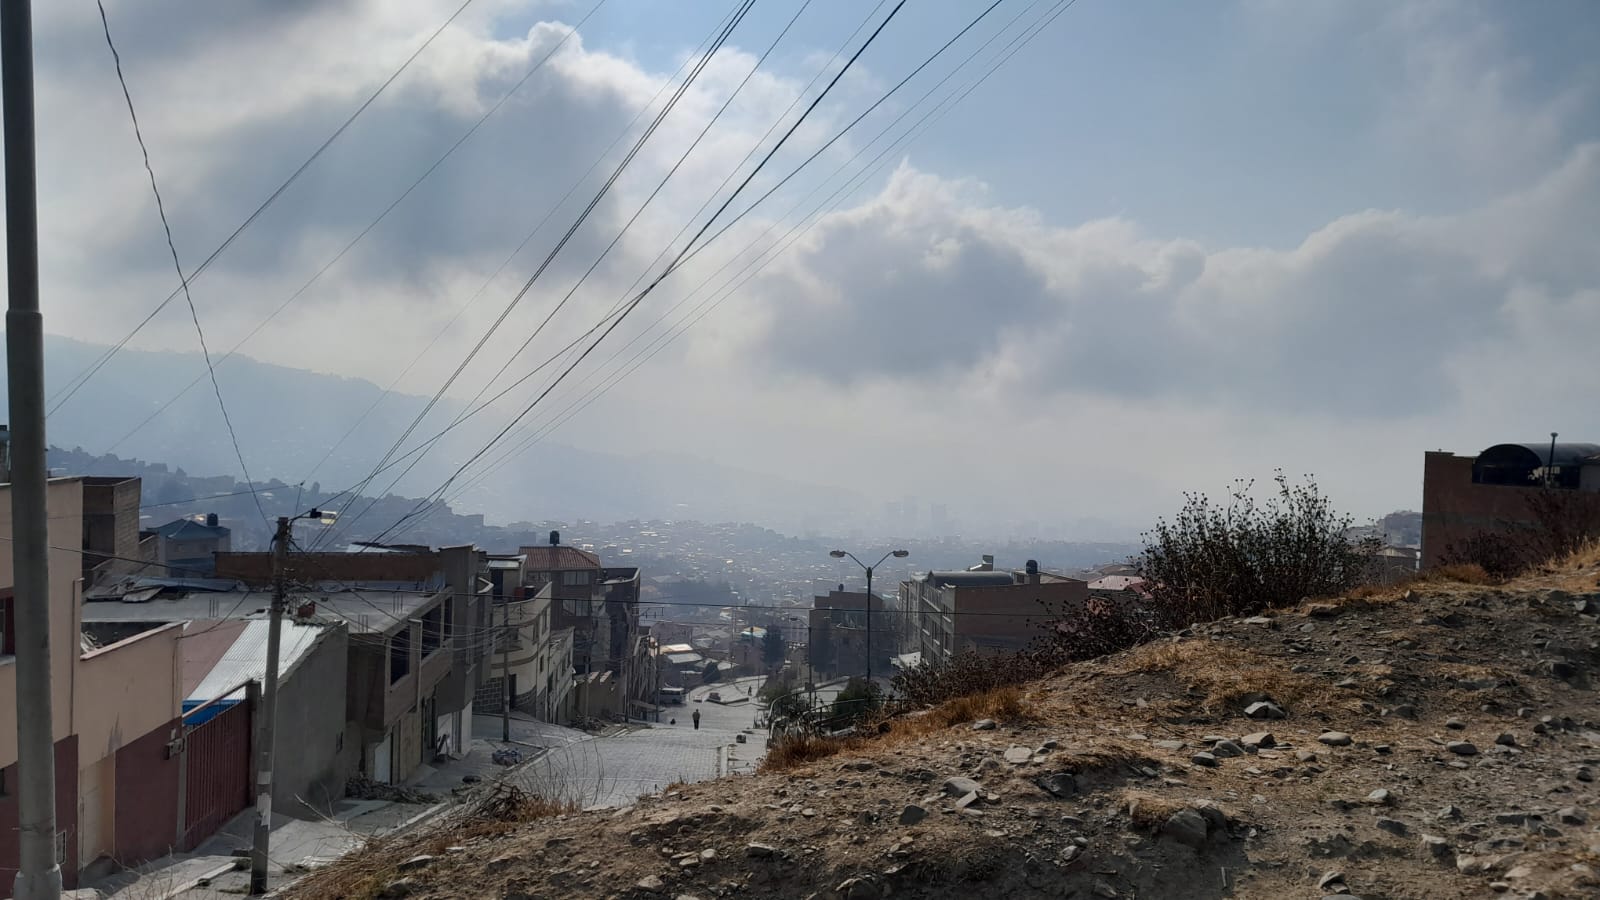 La Paz sufre contaminación de aire y agua. Piden acciones inmediatas y prohibir las quemas